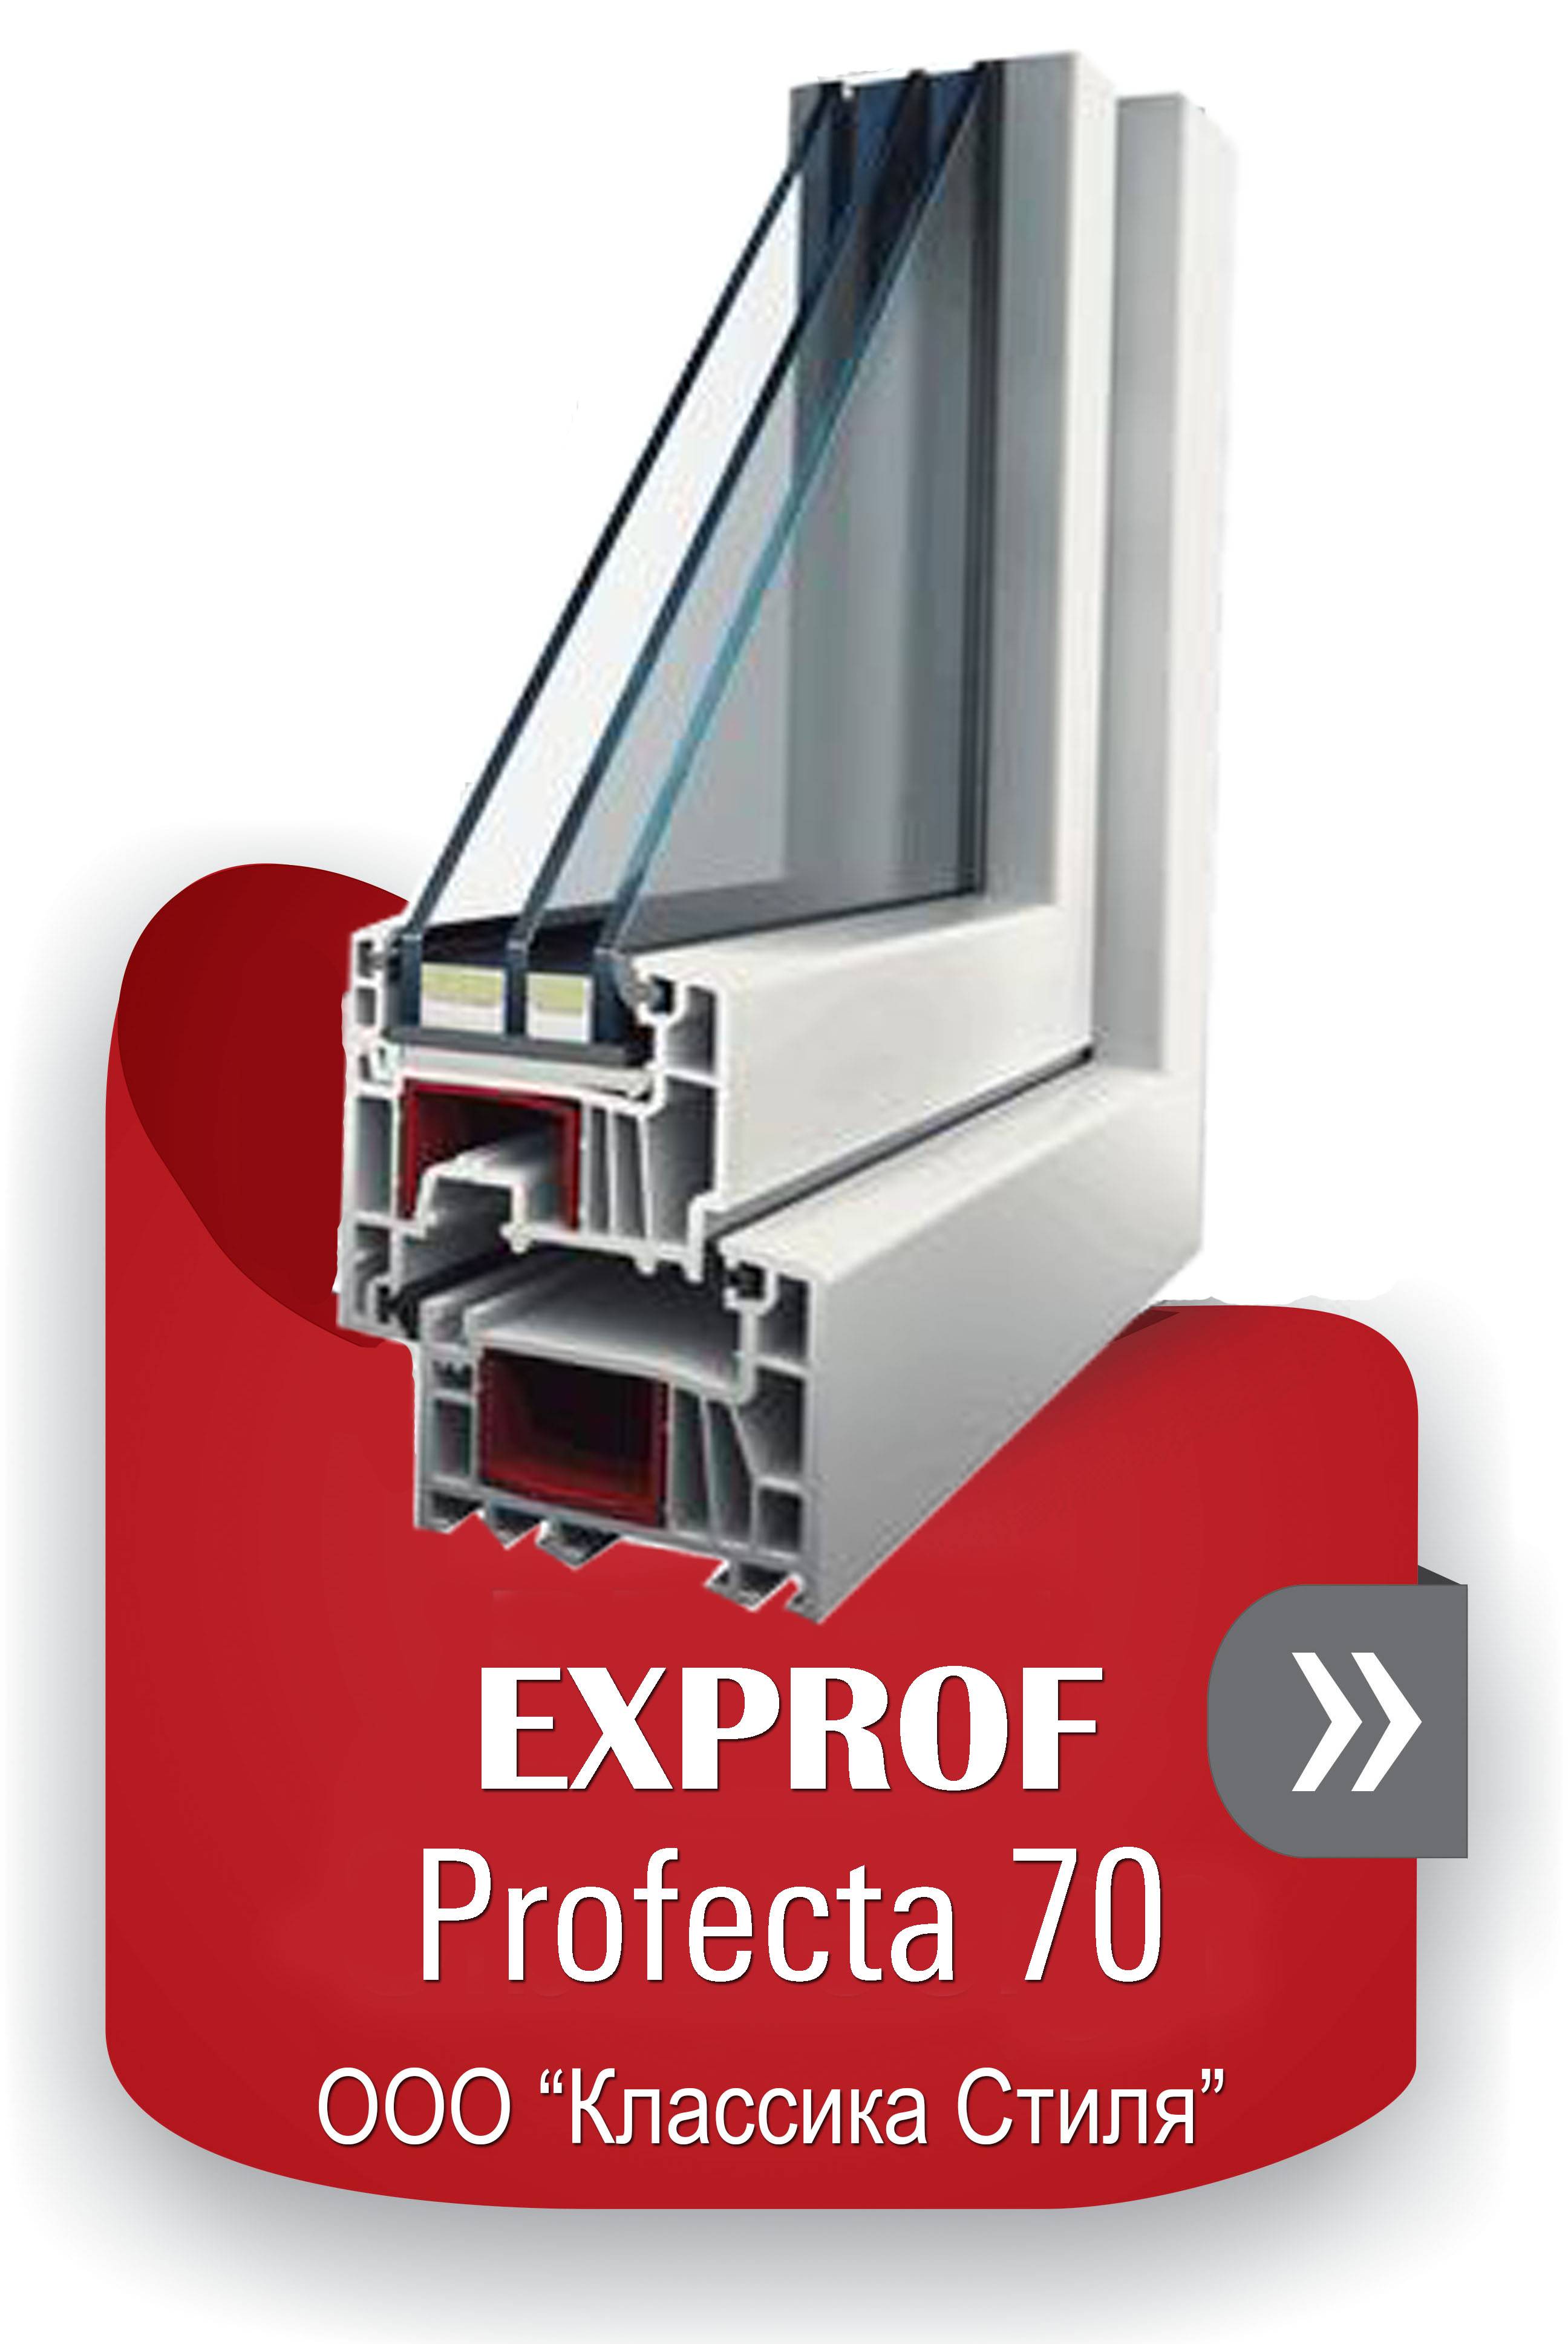 Профиль экспроф. Окна EXPROF 5 камерный. EXPROF experta профиль для окон 70. EXPROF Profecta 5кам. (70мм). Профиль ПВХ ЭКСПРОФ 70 мм.